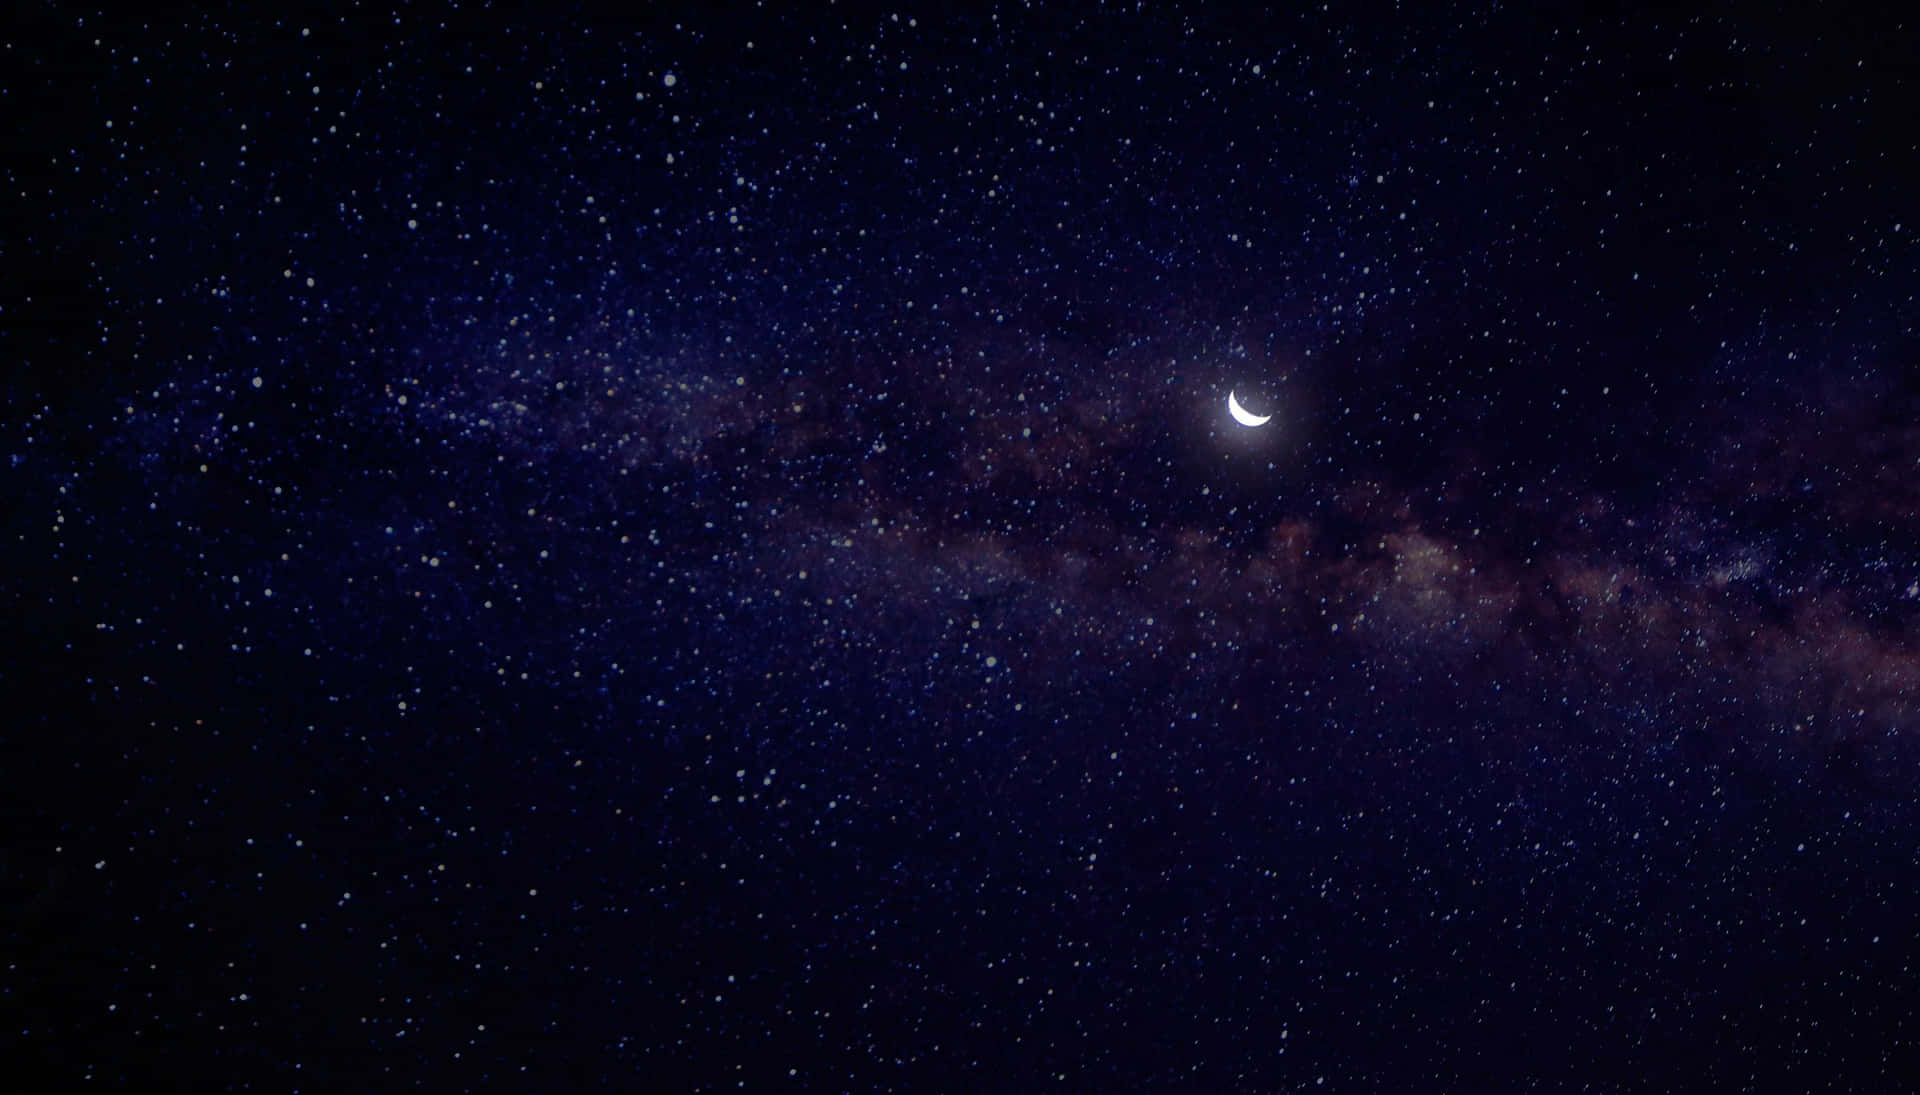 Cielonocturno De Ensueño Lleno De Estrellas Y La Luna Como Se Ve Desde Una Playa. Fondo de pantalla